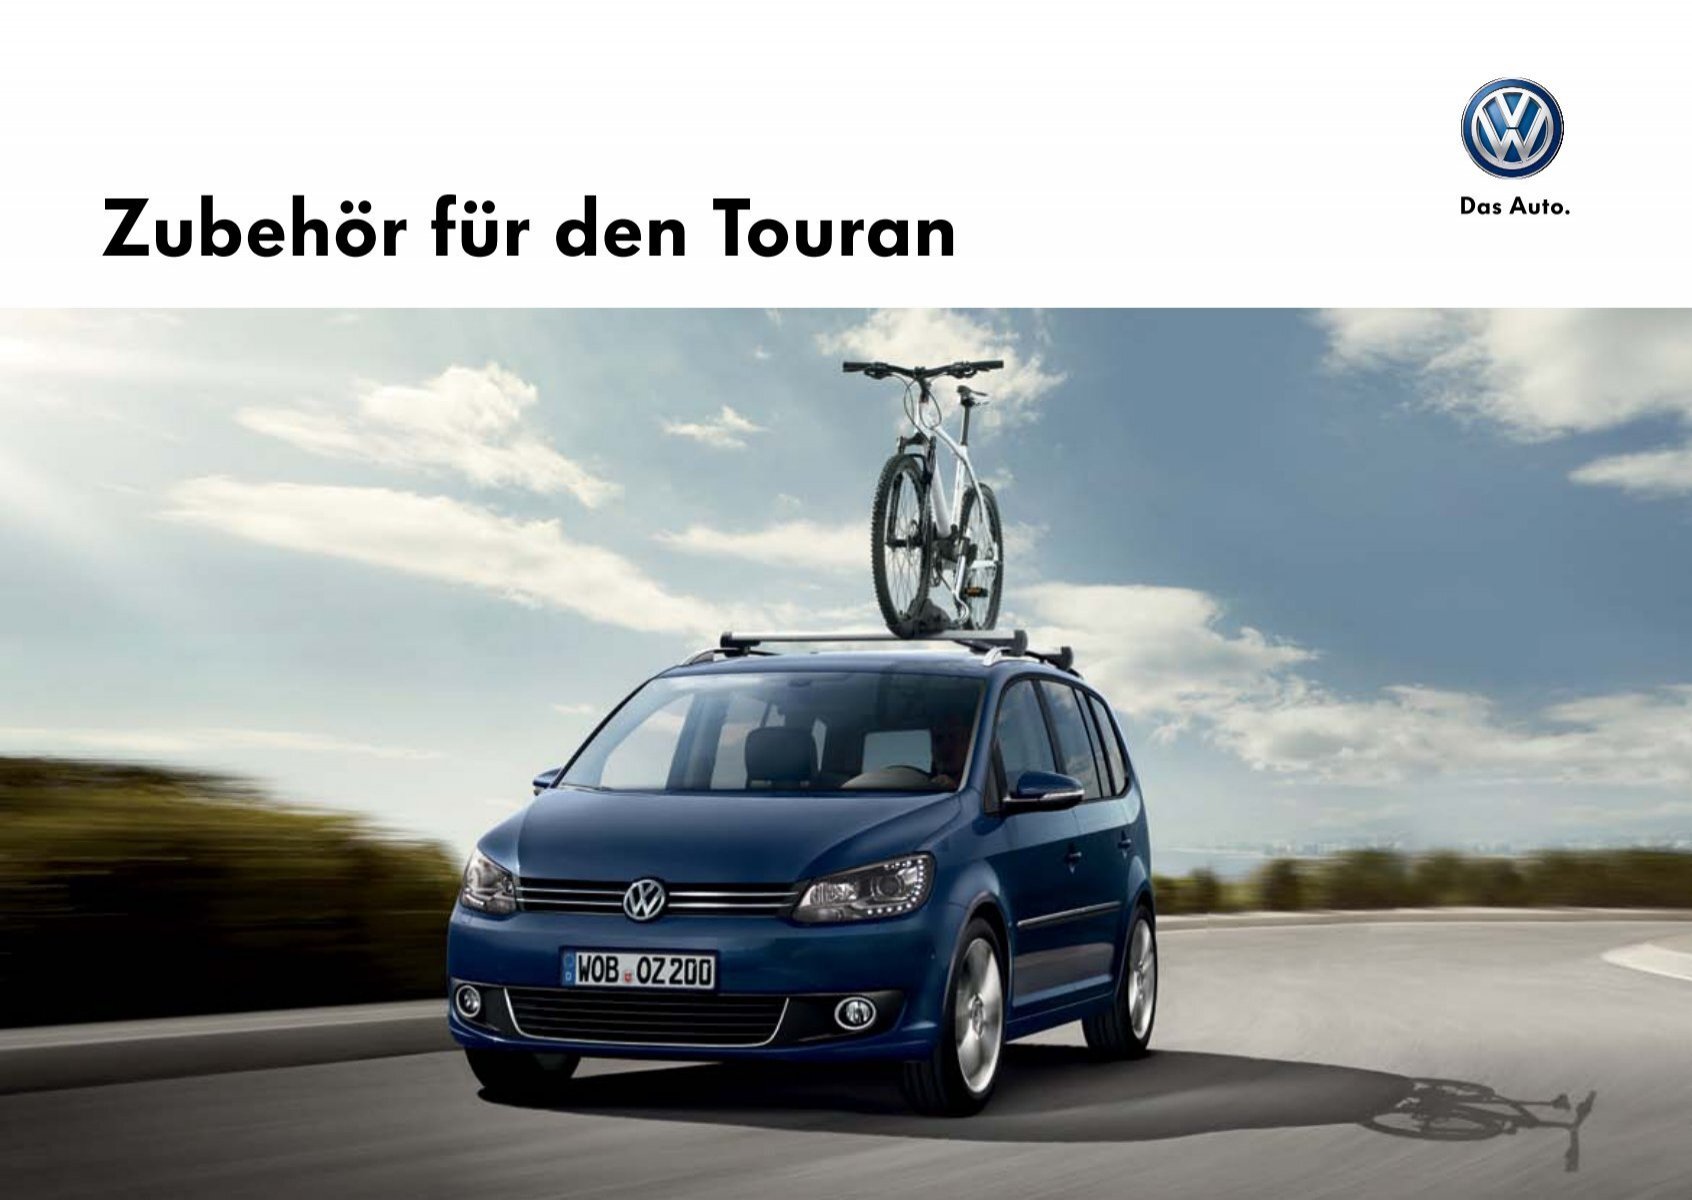 ZubehÃ¶r fÃ¼r den Touran - Volkswagen